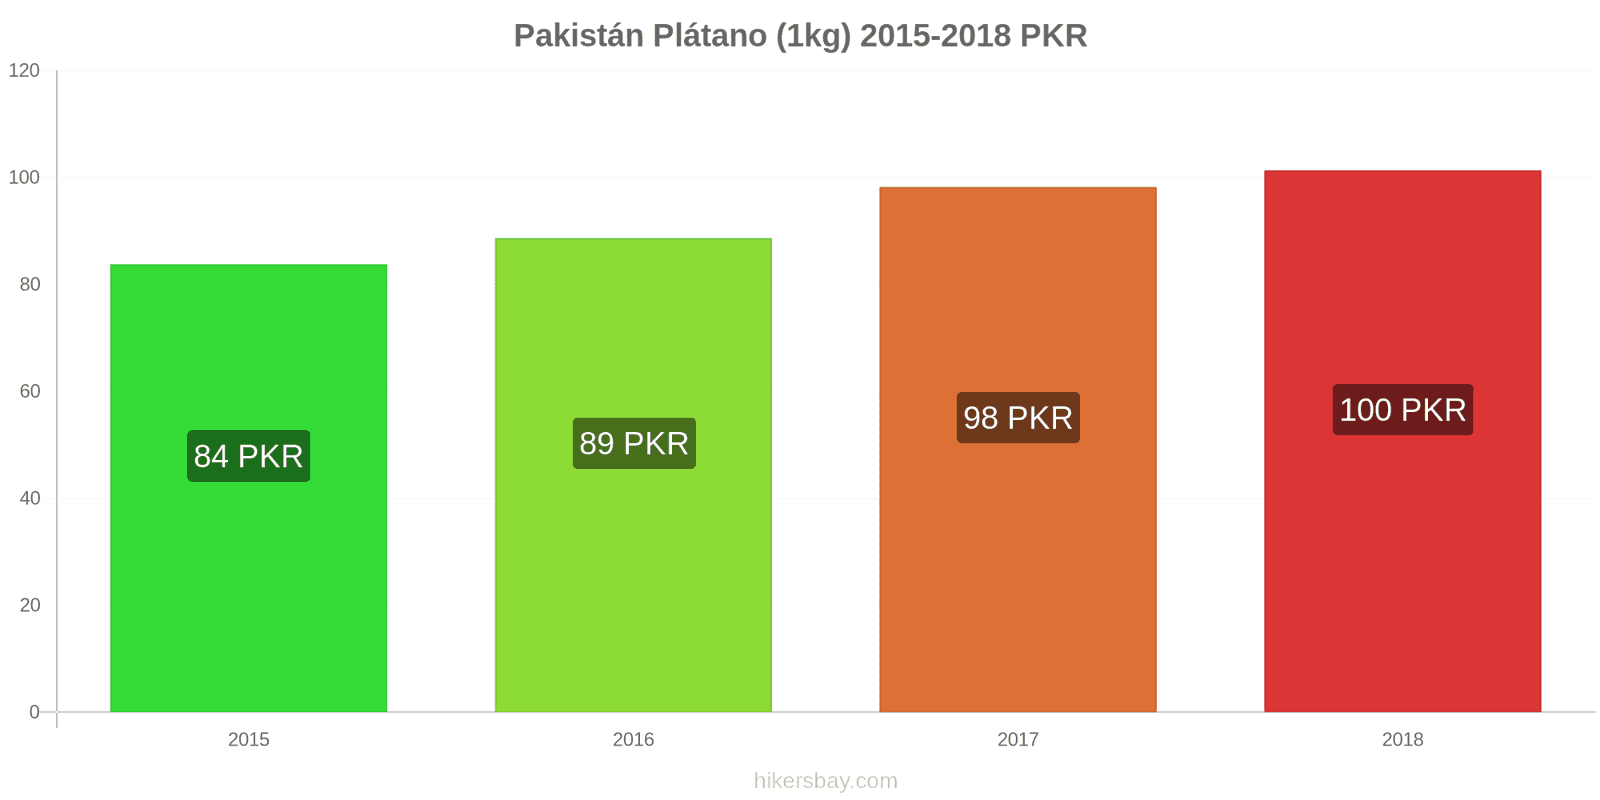 Pakistán cambios de precios Plátanos (1kg) hikersbay.com